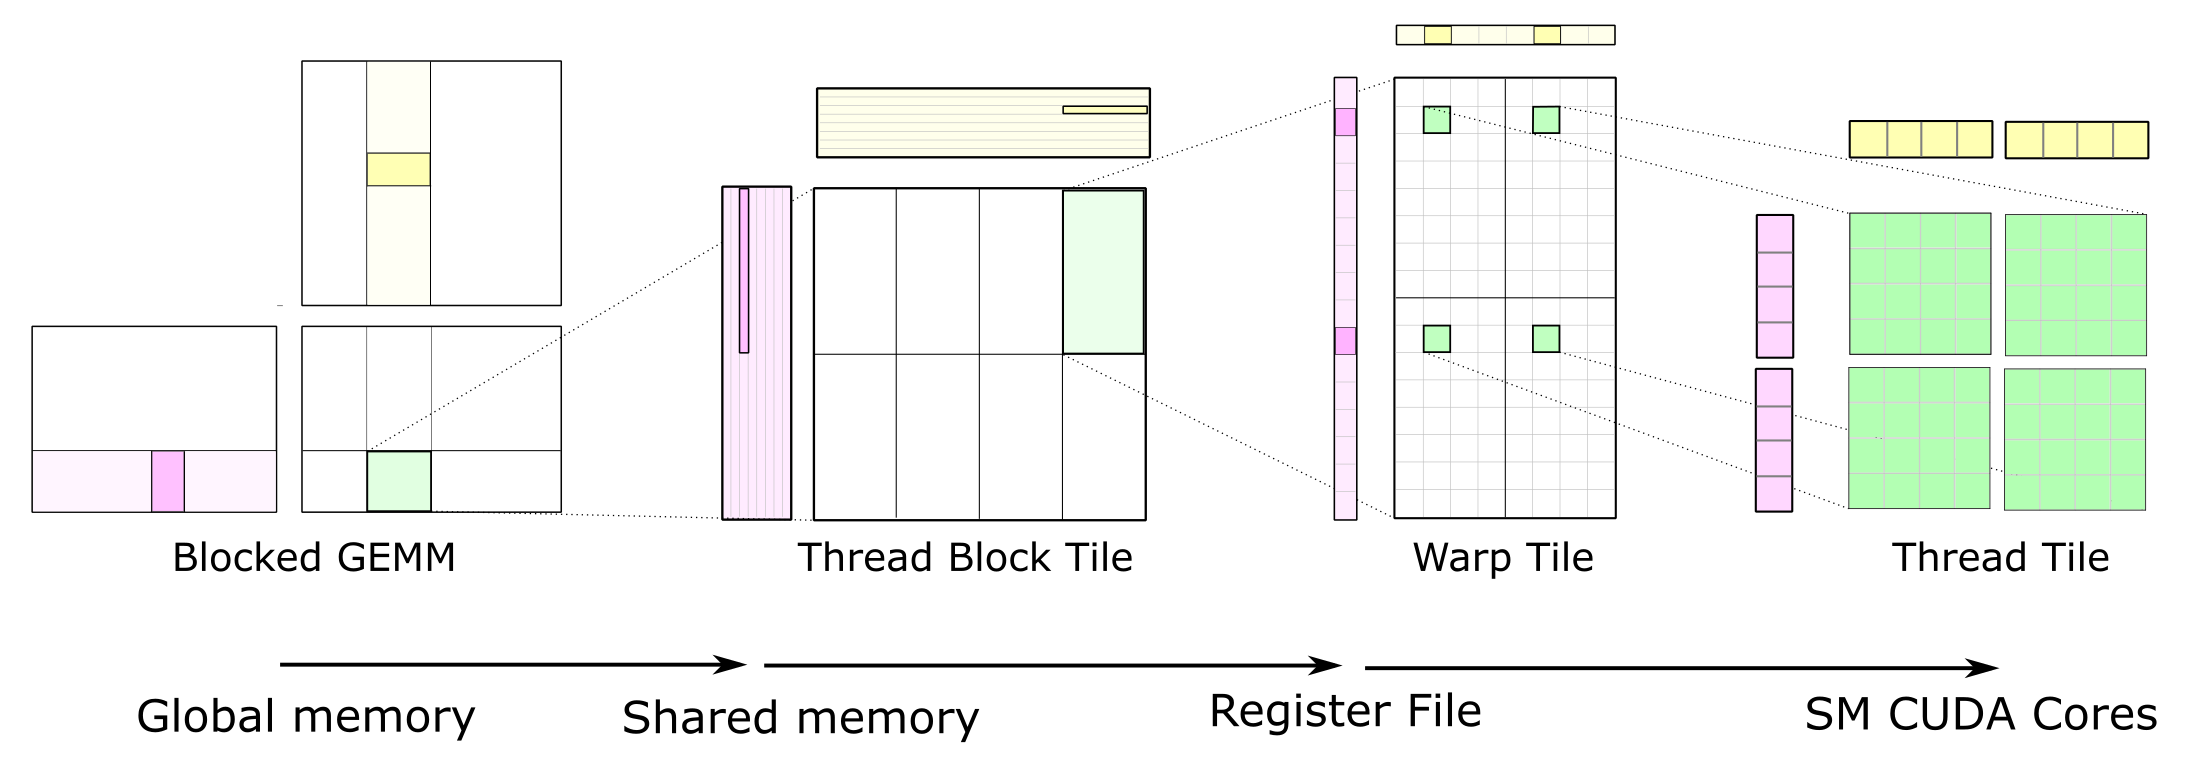 The Complete GEMM CUDA Kernel Hierarchy